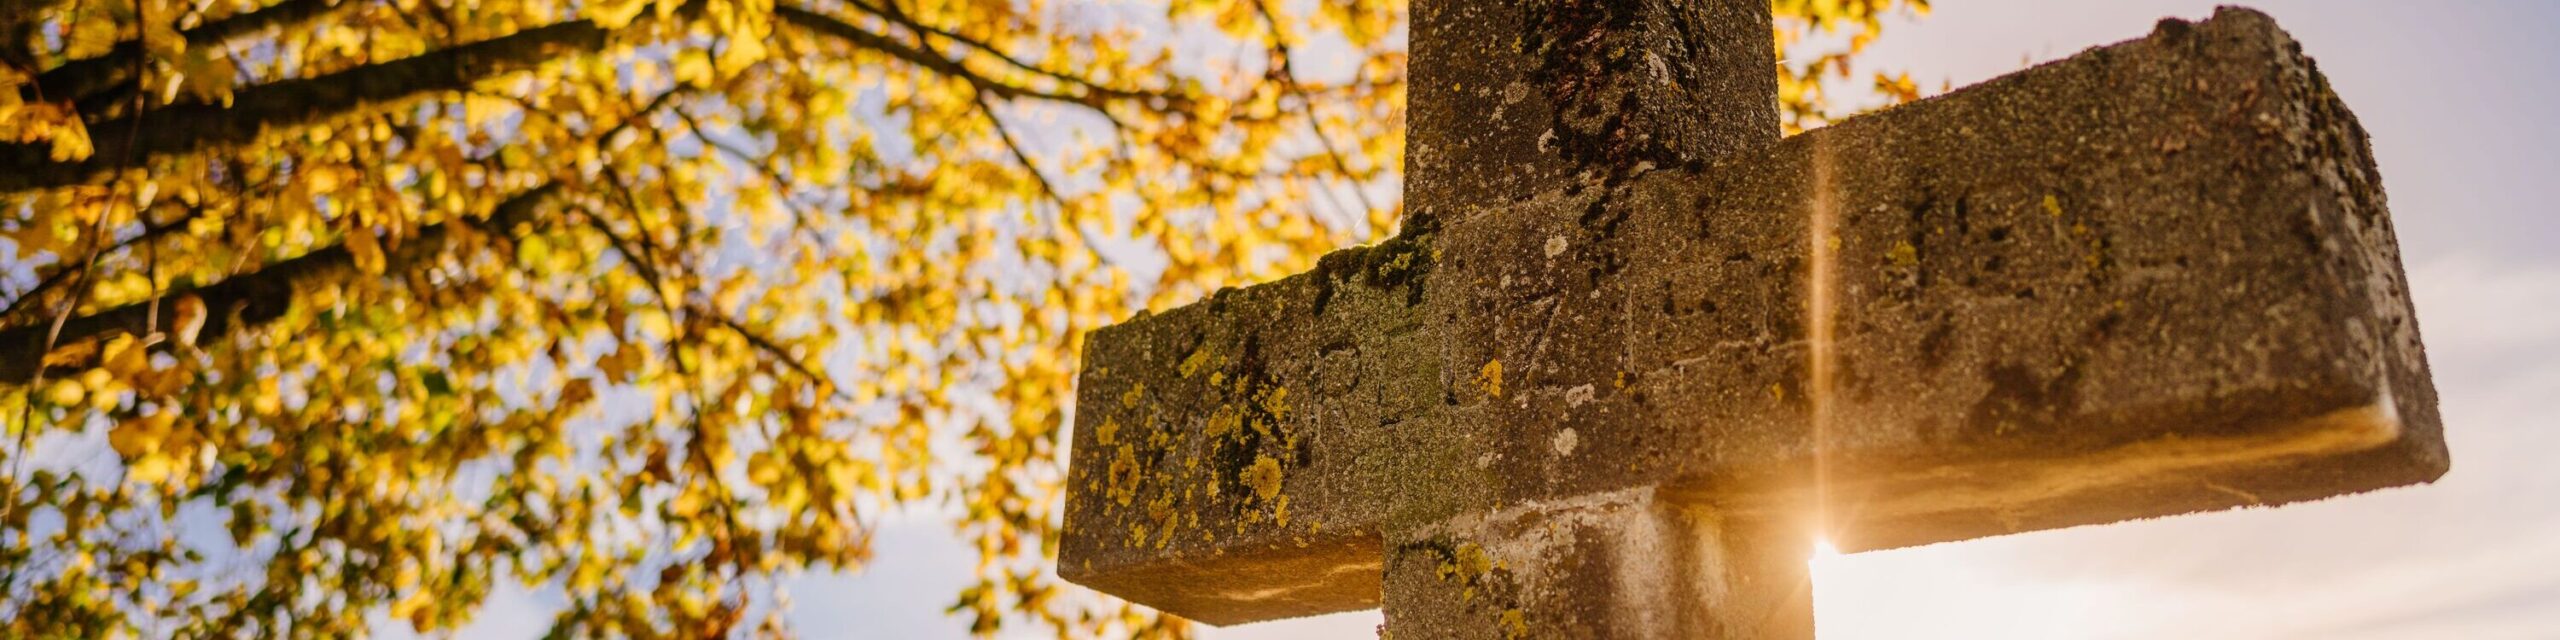 Steinkreuz in Herbstlichem Licht